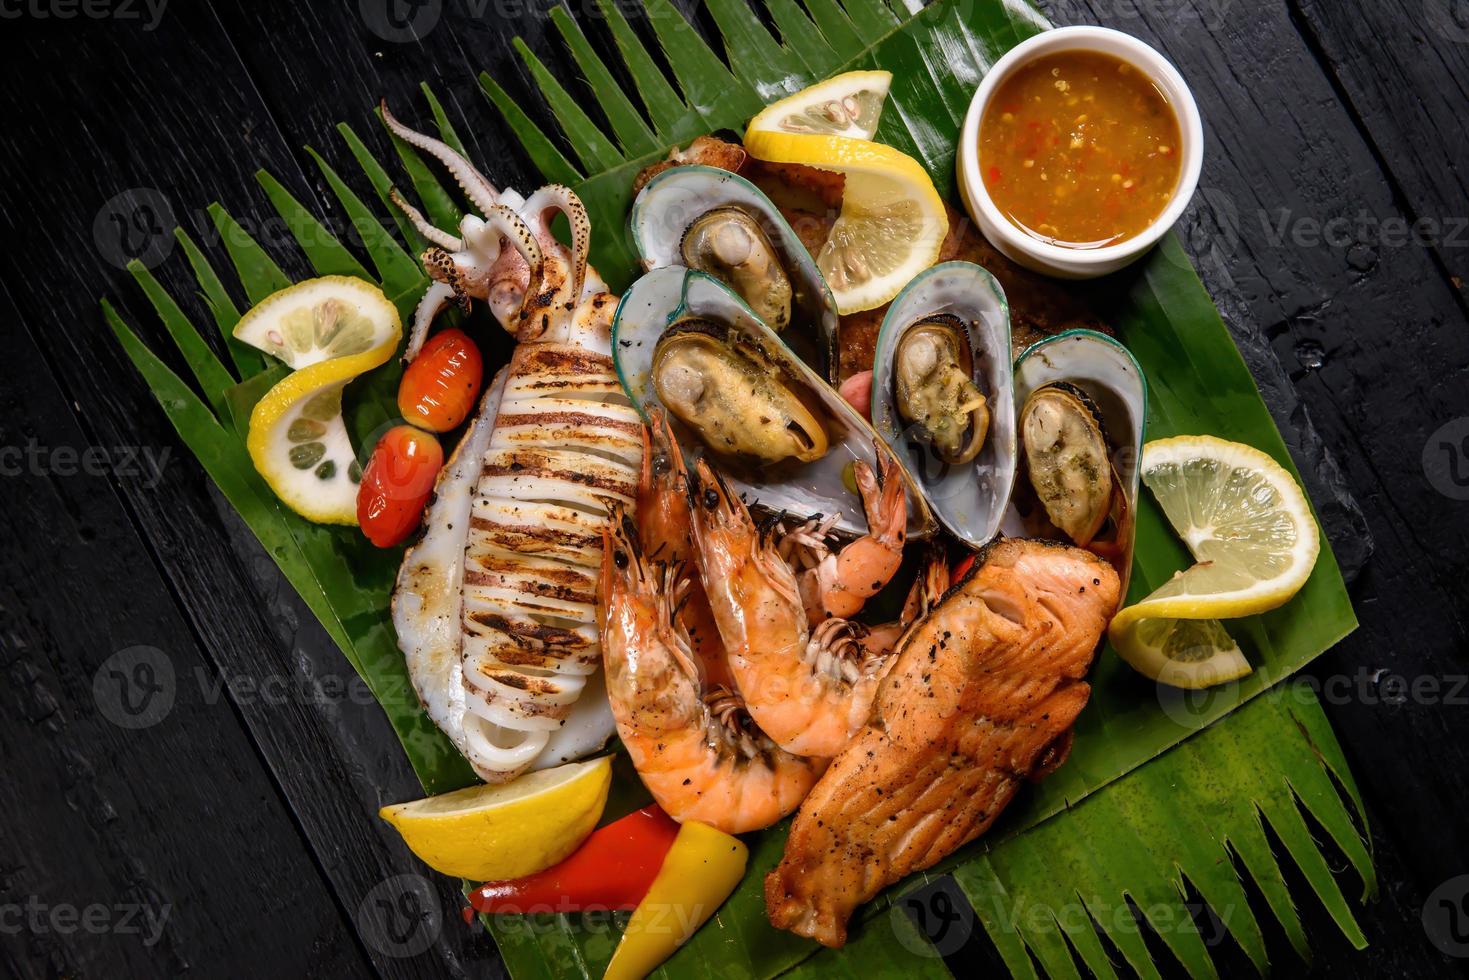 gemischter Meeresfrüchte-Grill mit blauen Krabben, Muscheln, großen Garnelen, Tintenfisch und gegrilltem Lachs foto